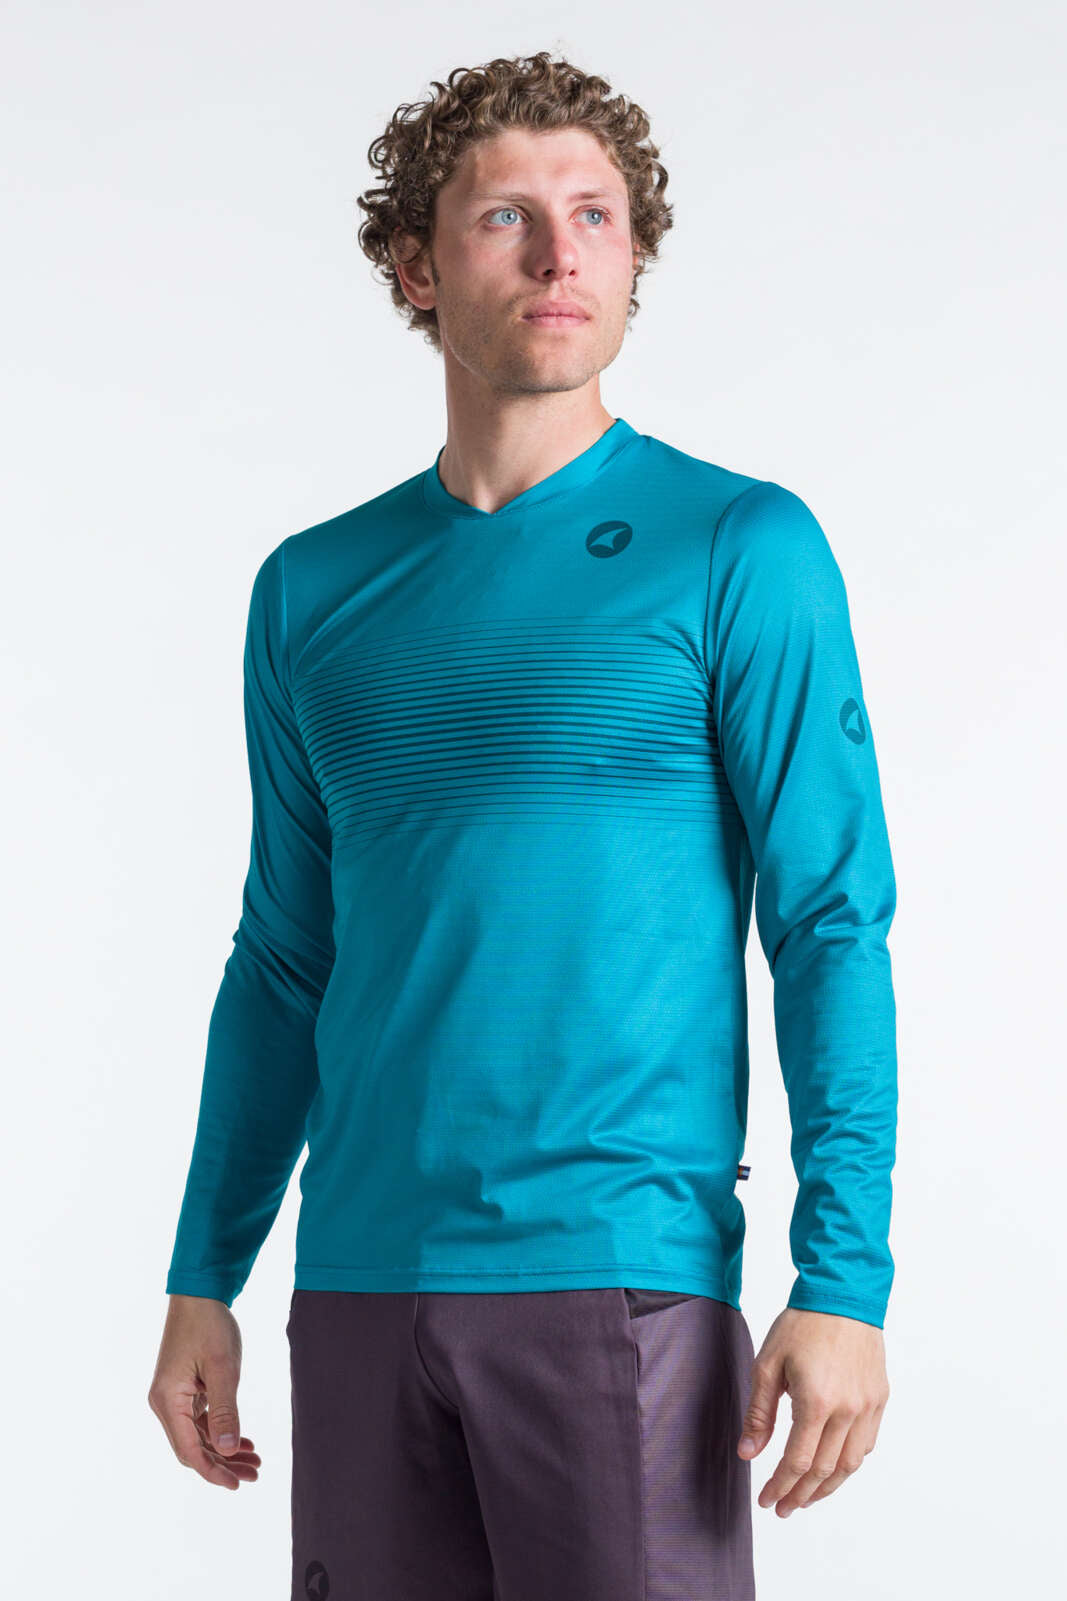 Men's Long Sleeve Running Shirt - Front View